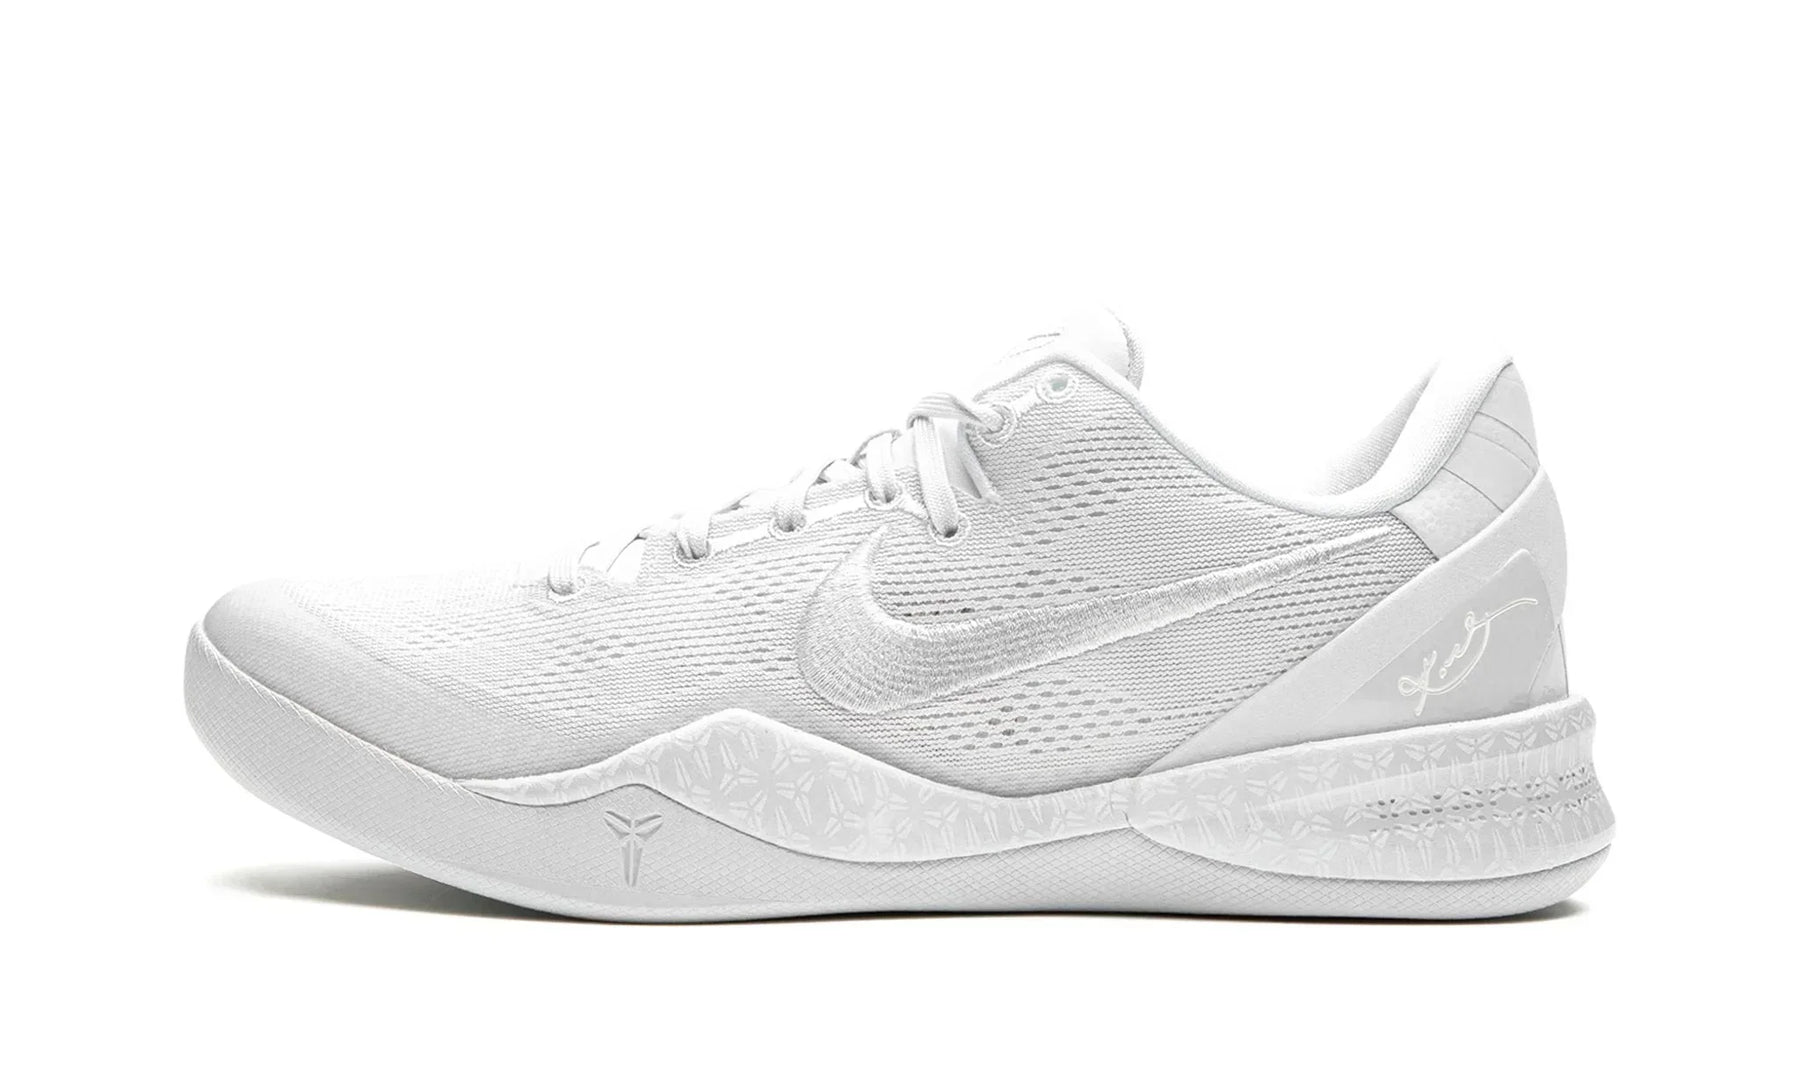 Nike Kobe 8 Protro "Triple White" US 10